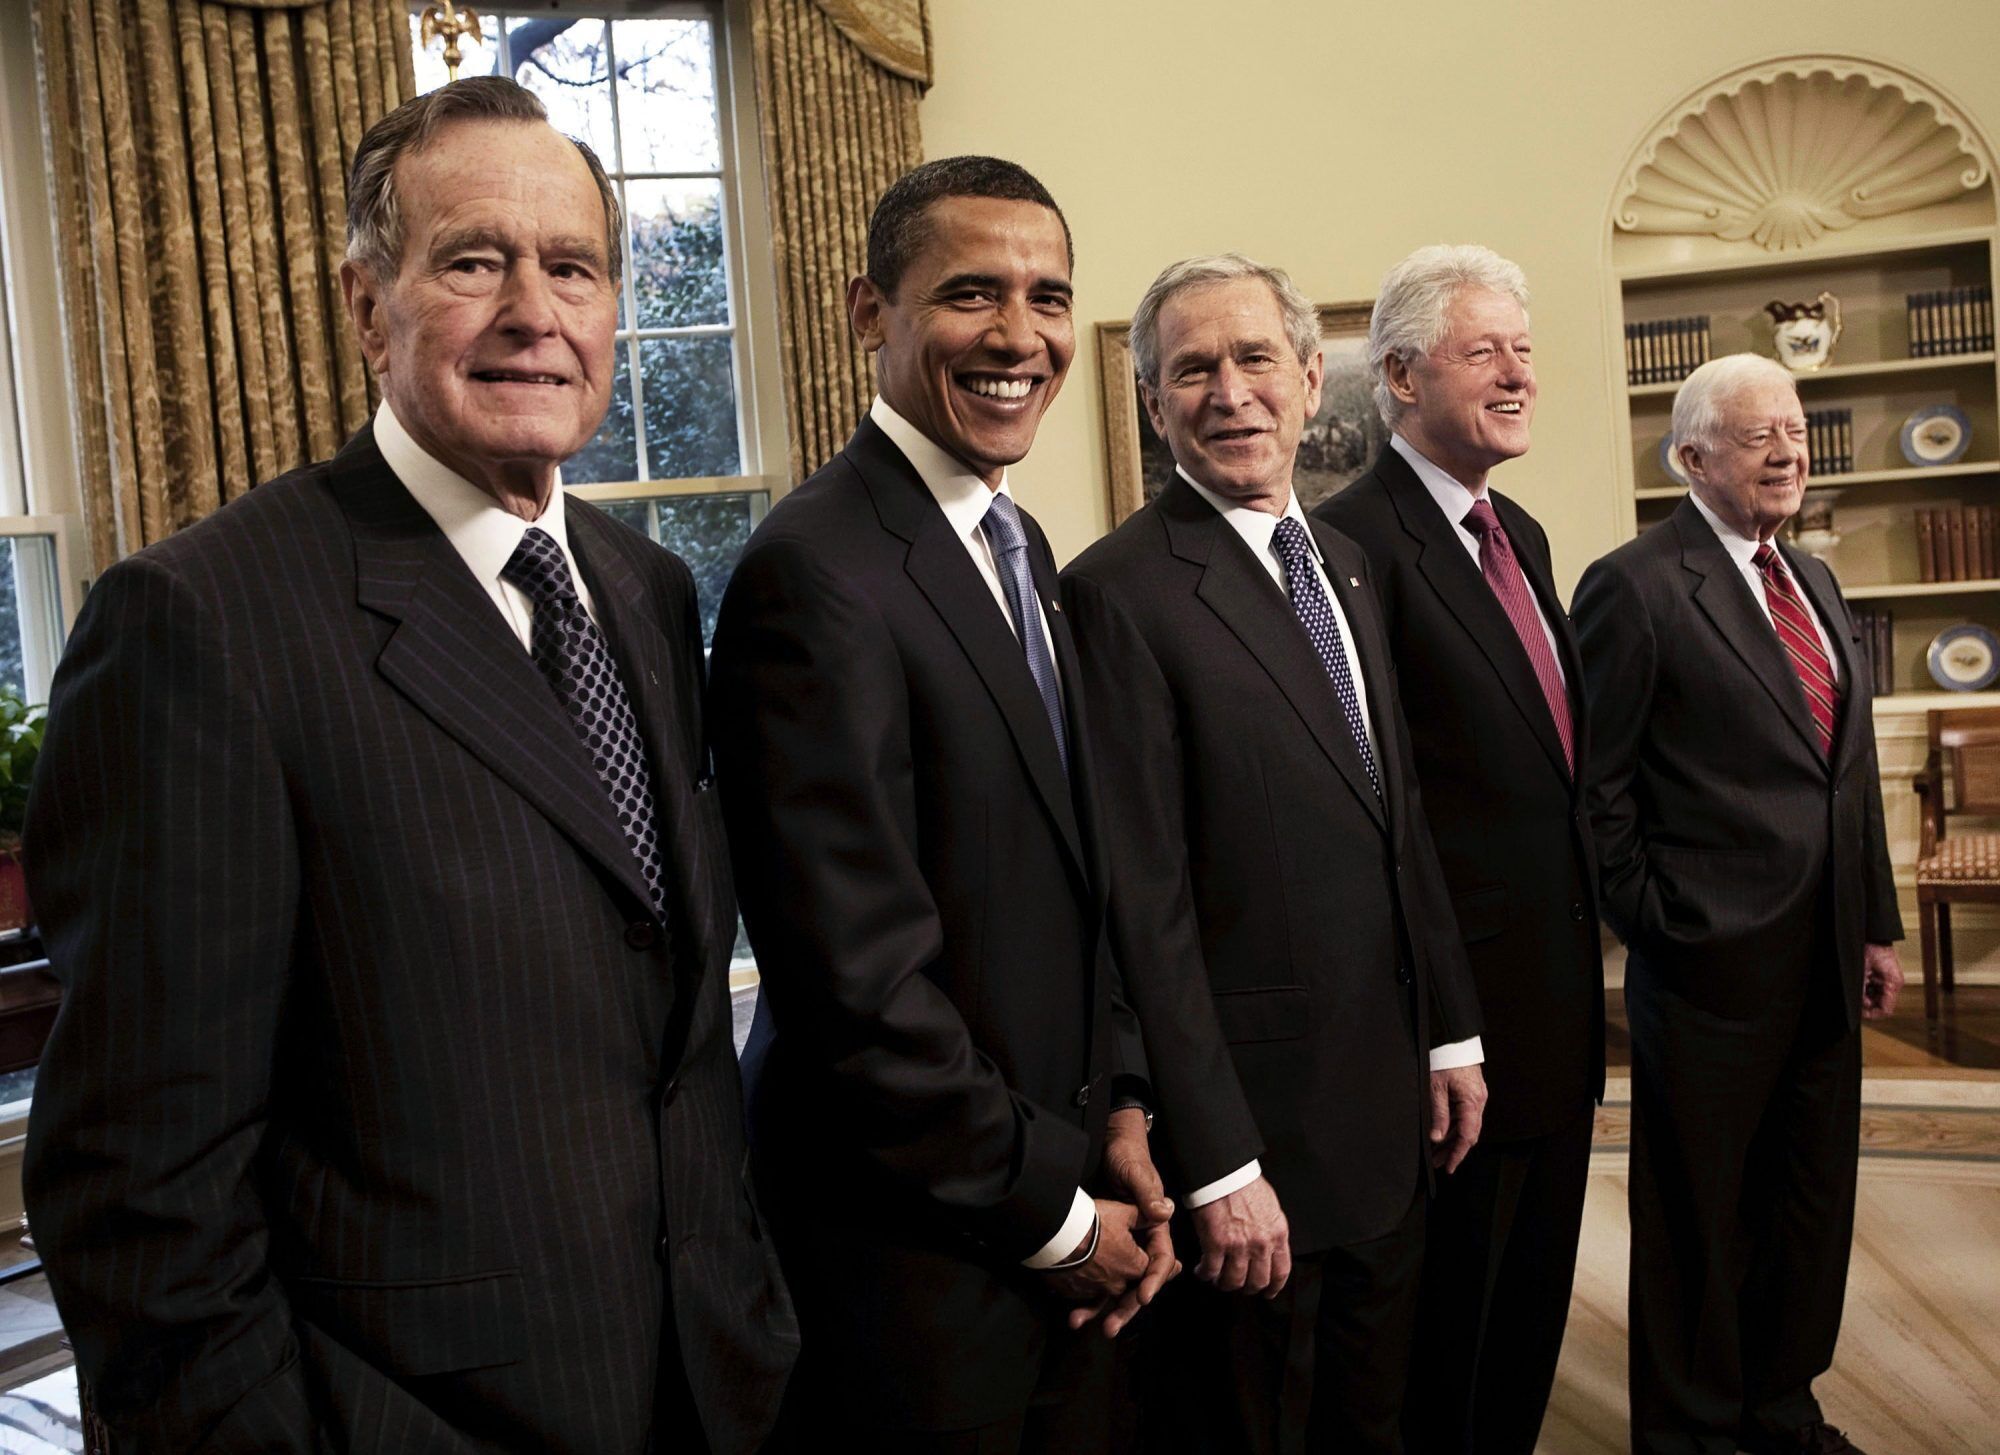 Джордж Буш-старший, Барак Обама, Джордж Буш-младший, Билл Клинтон и Джимми Картер